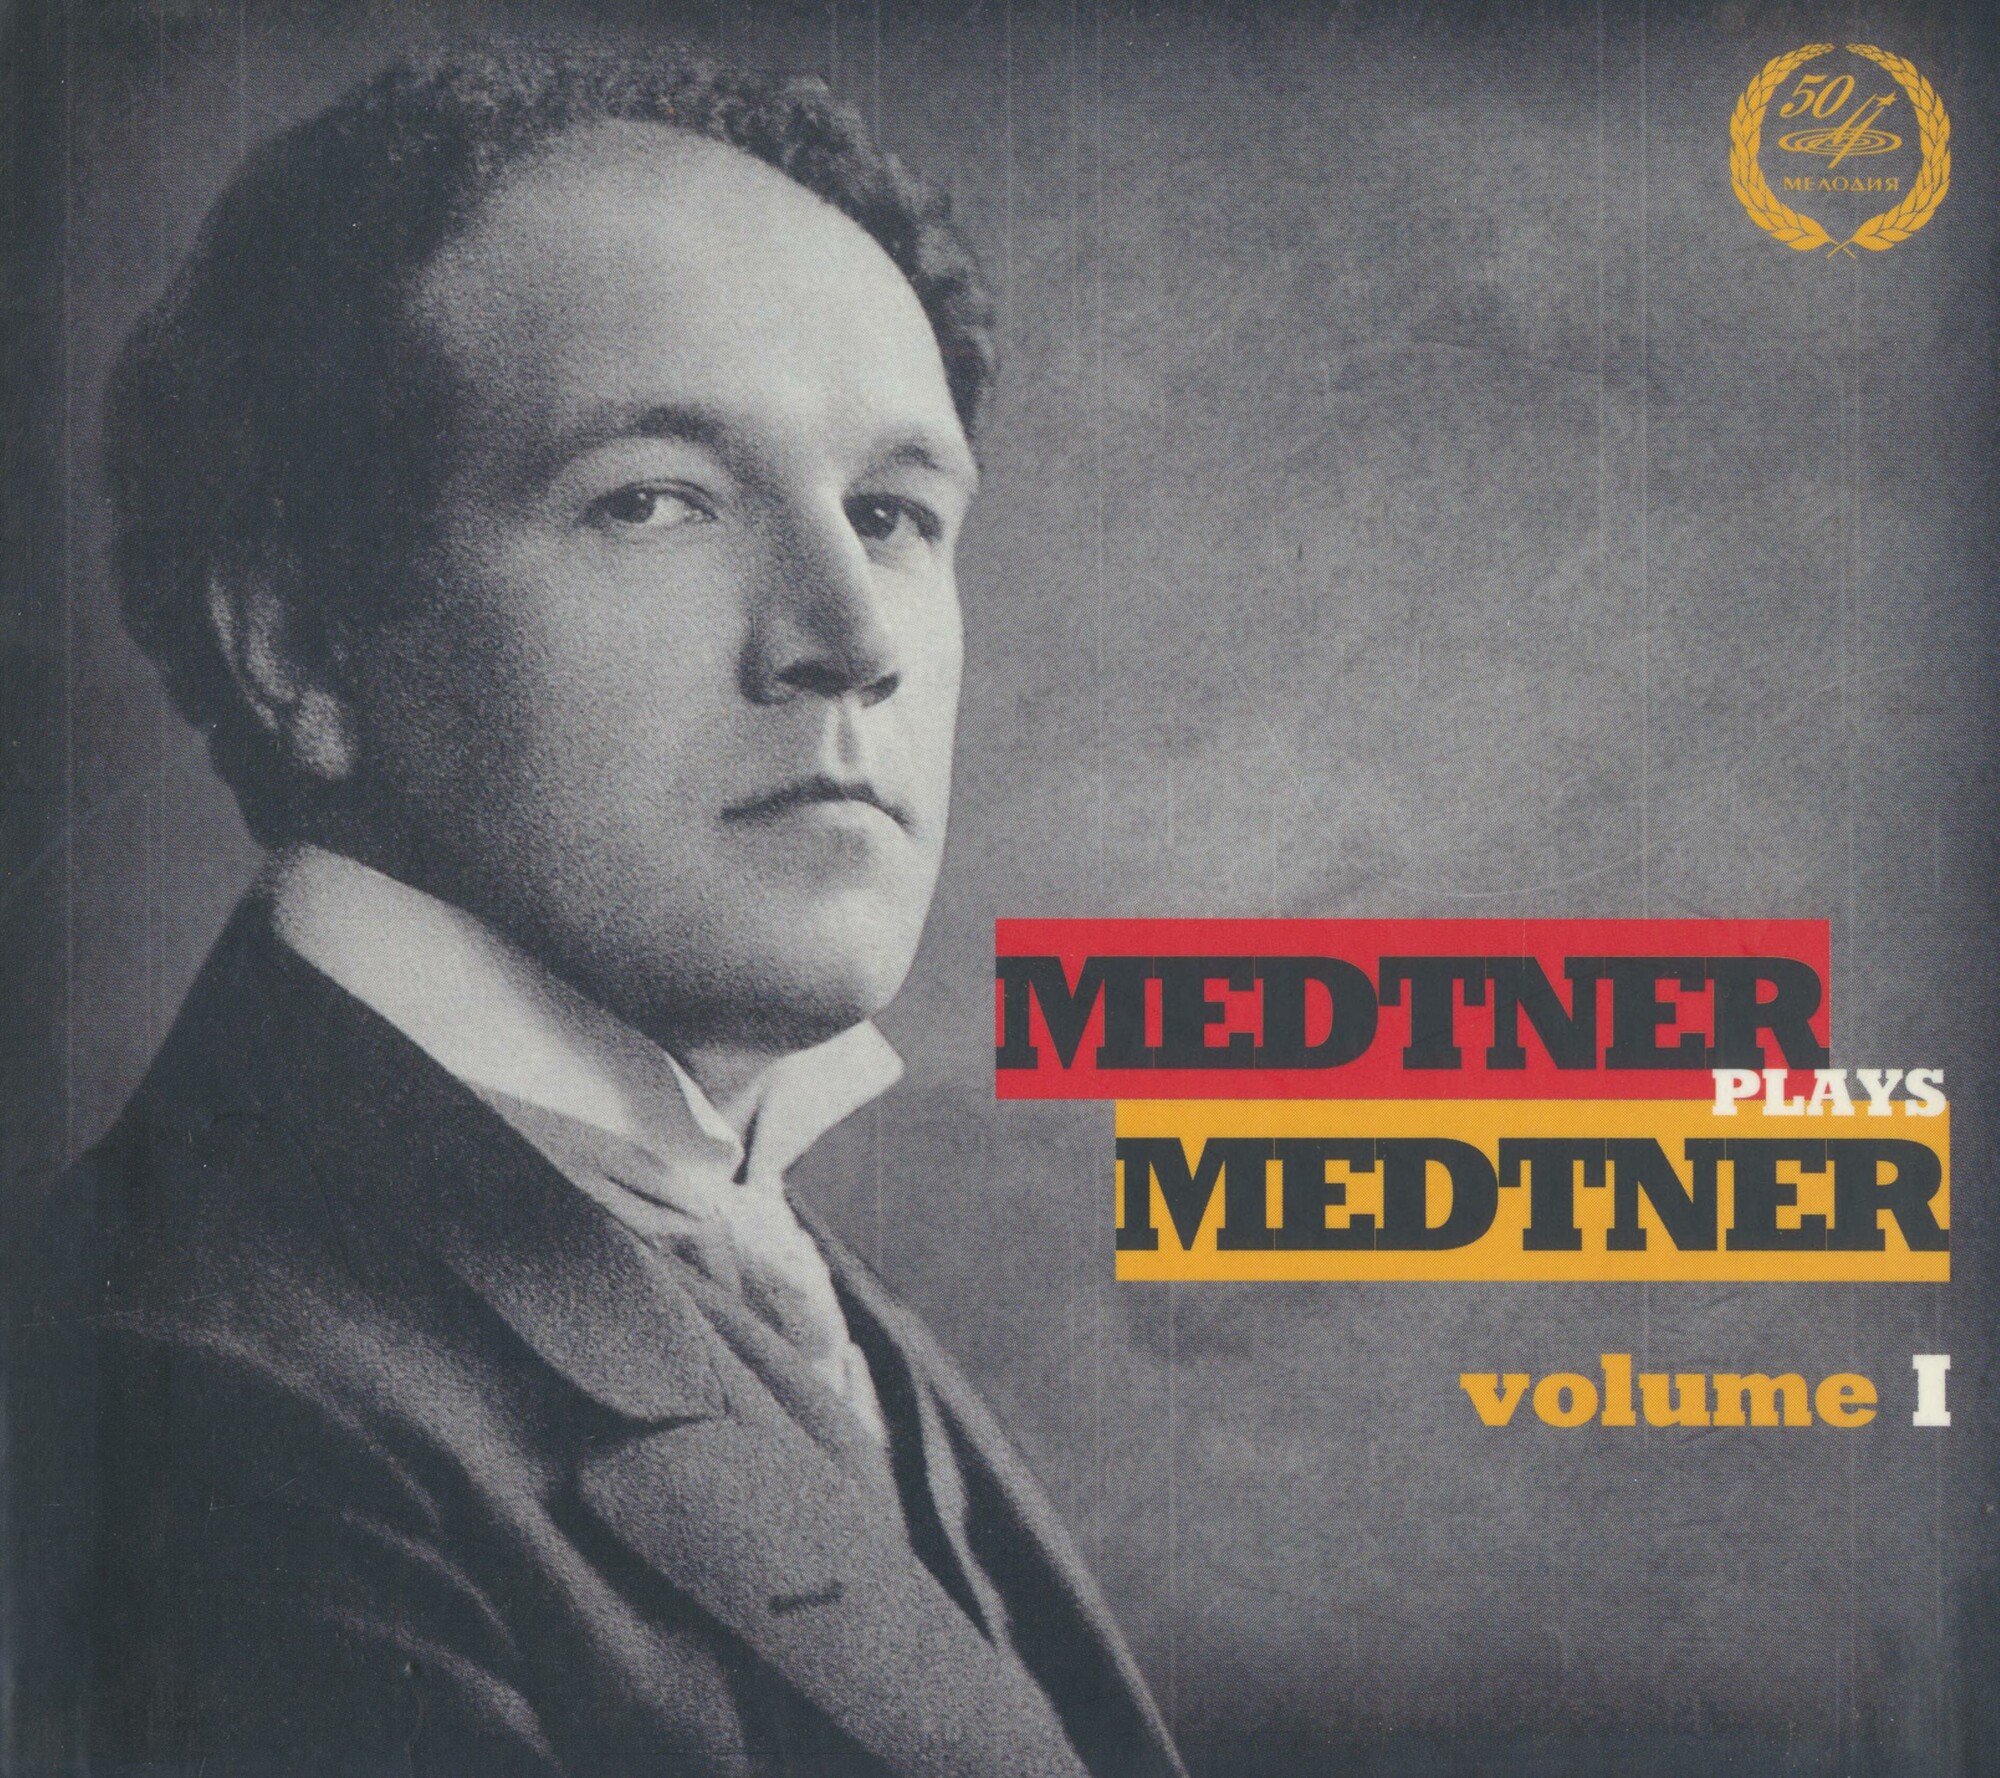 Medtner Plays Medtner. Volume I